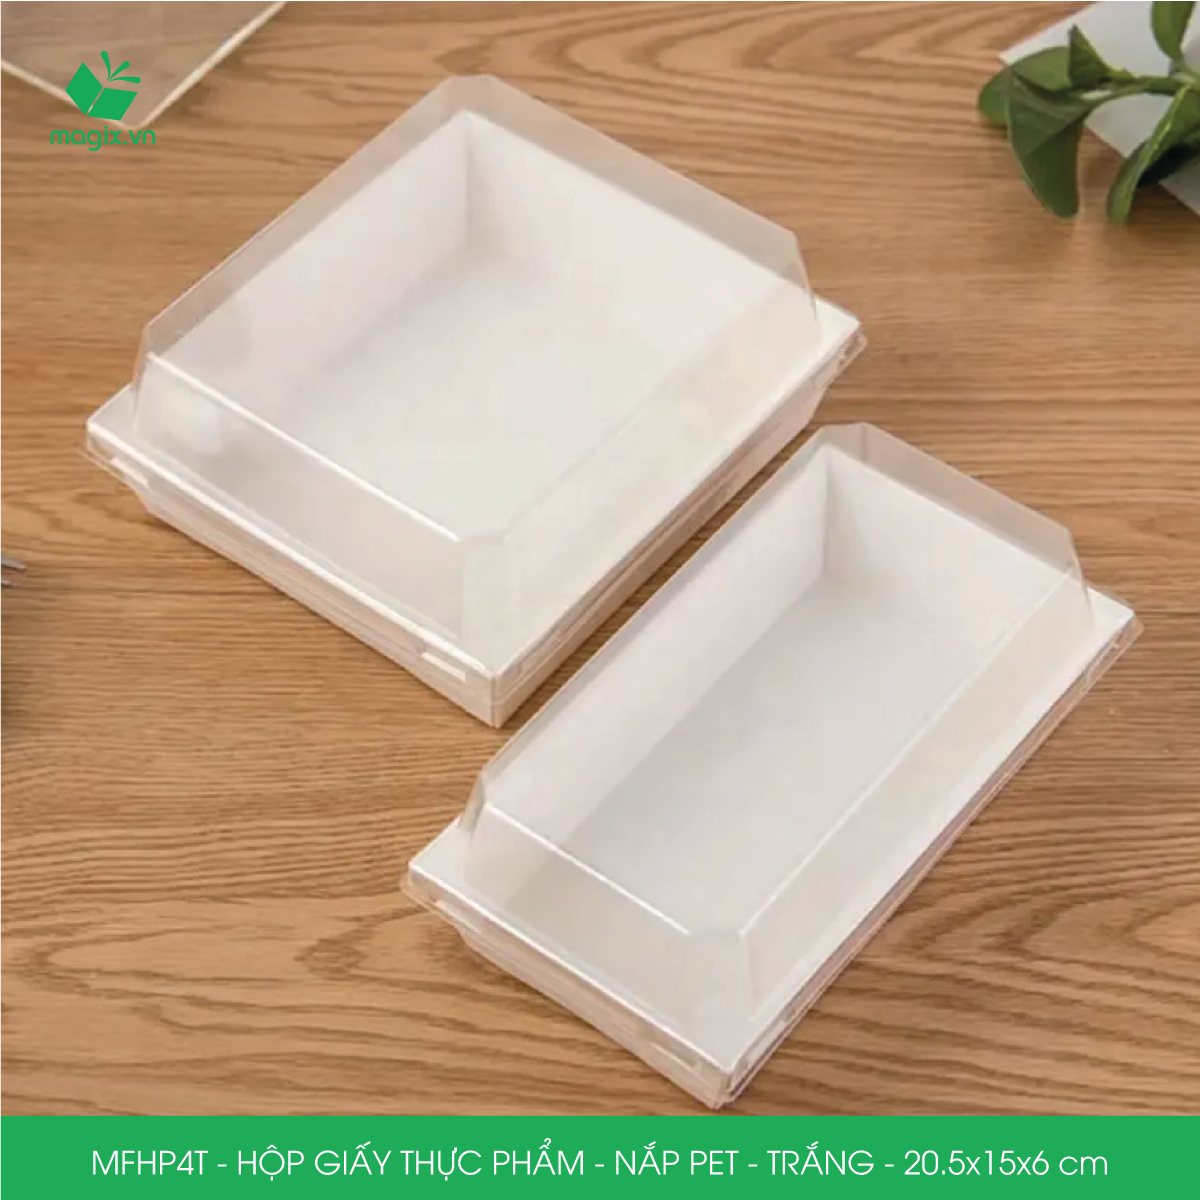 MFHP4T - 20.5x15x6 cm - 100 hộp giấy thực phẩm màu trắng nắp Pet, hộp giấy chữ nhật đựng thức ăn, hộp bánh nắp trong